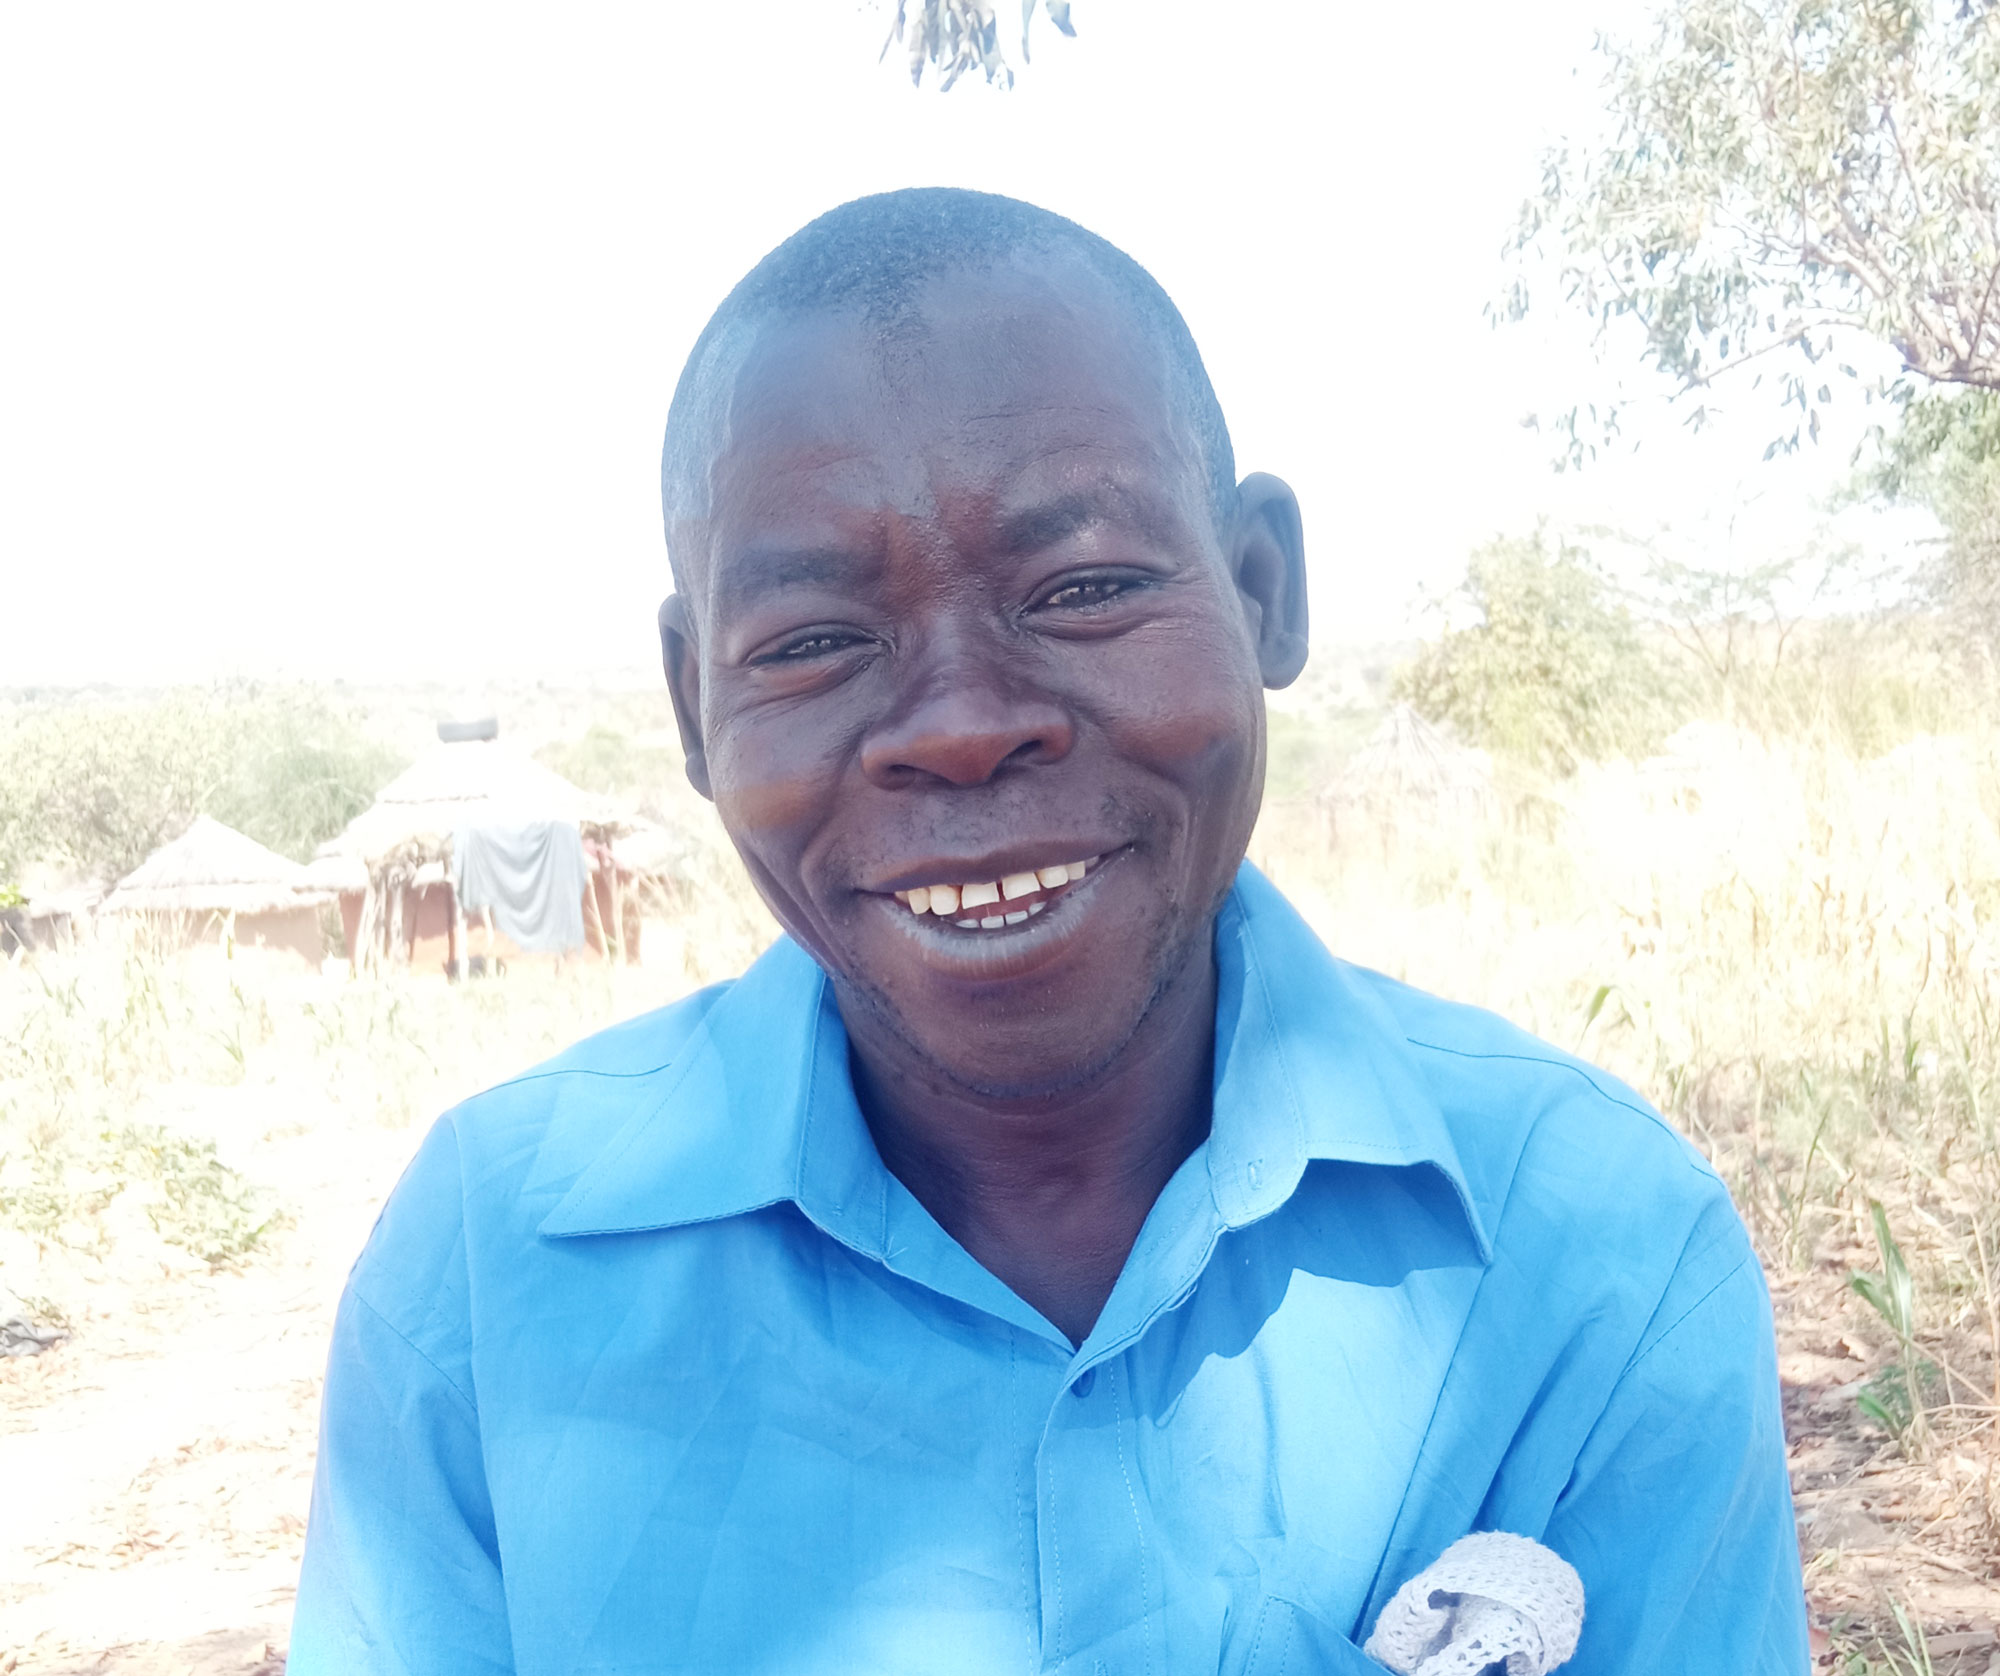 Badoru Ismael, farmer and father